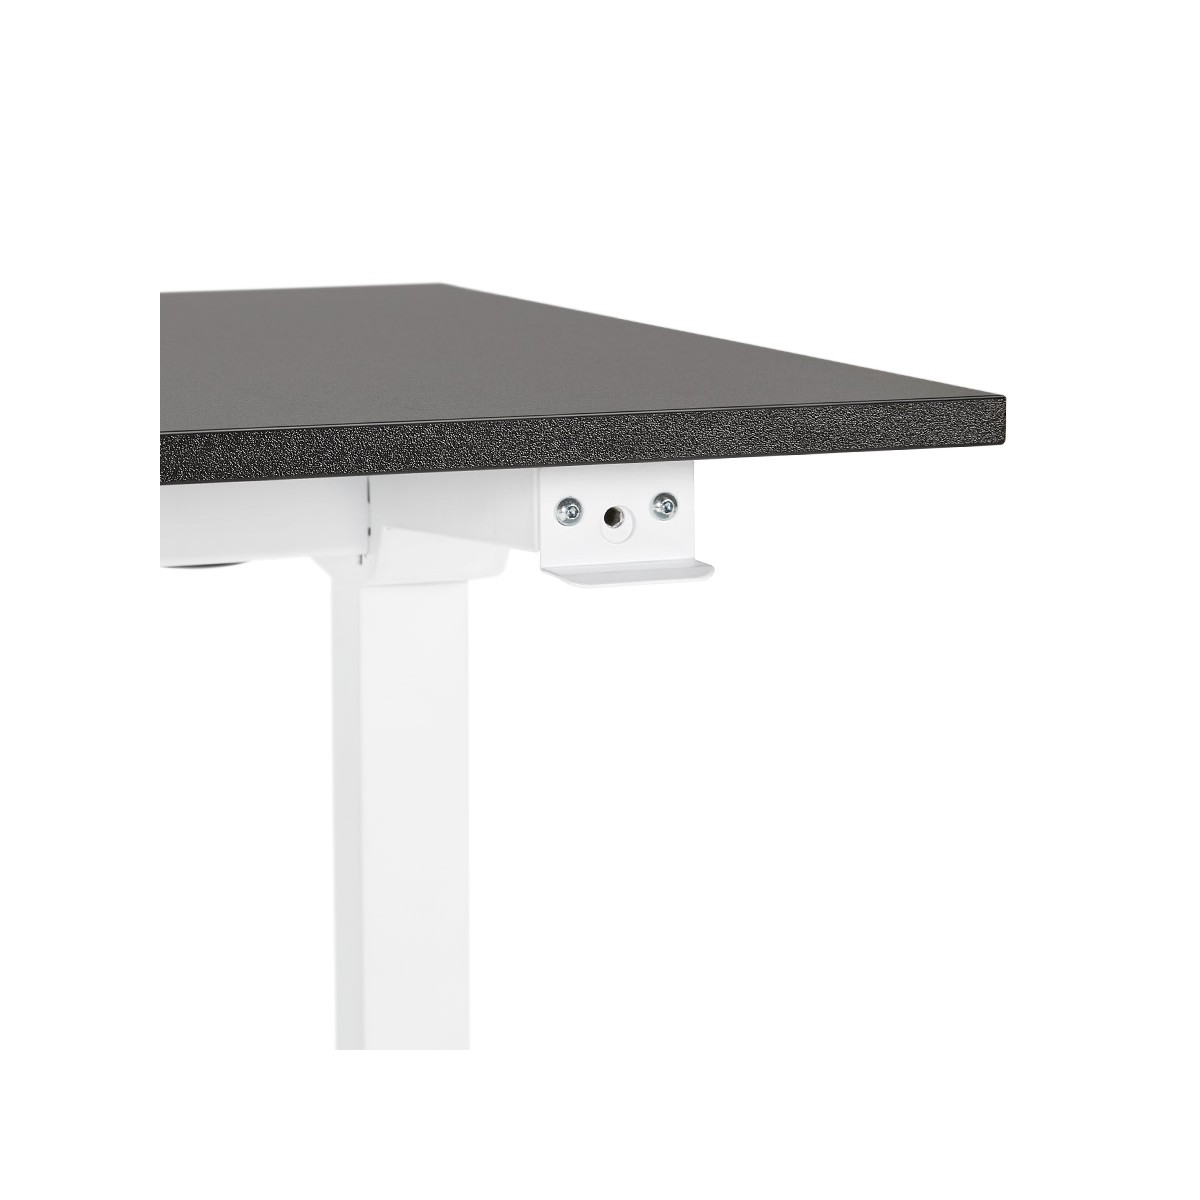 Bureau assis debout en bois pieds blanc cassé NAOMIE (140x70 cm) (blanc) -  Bureaux design et contemporains